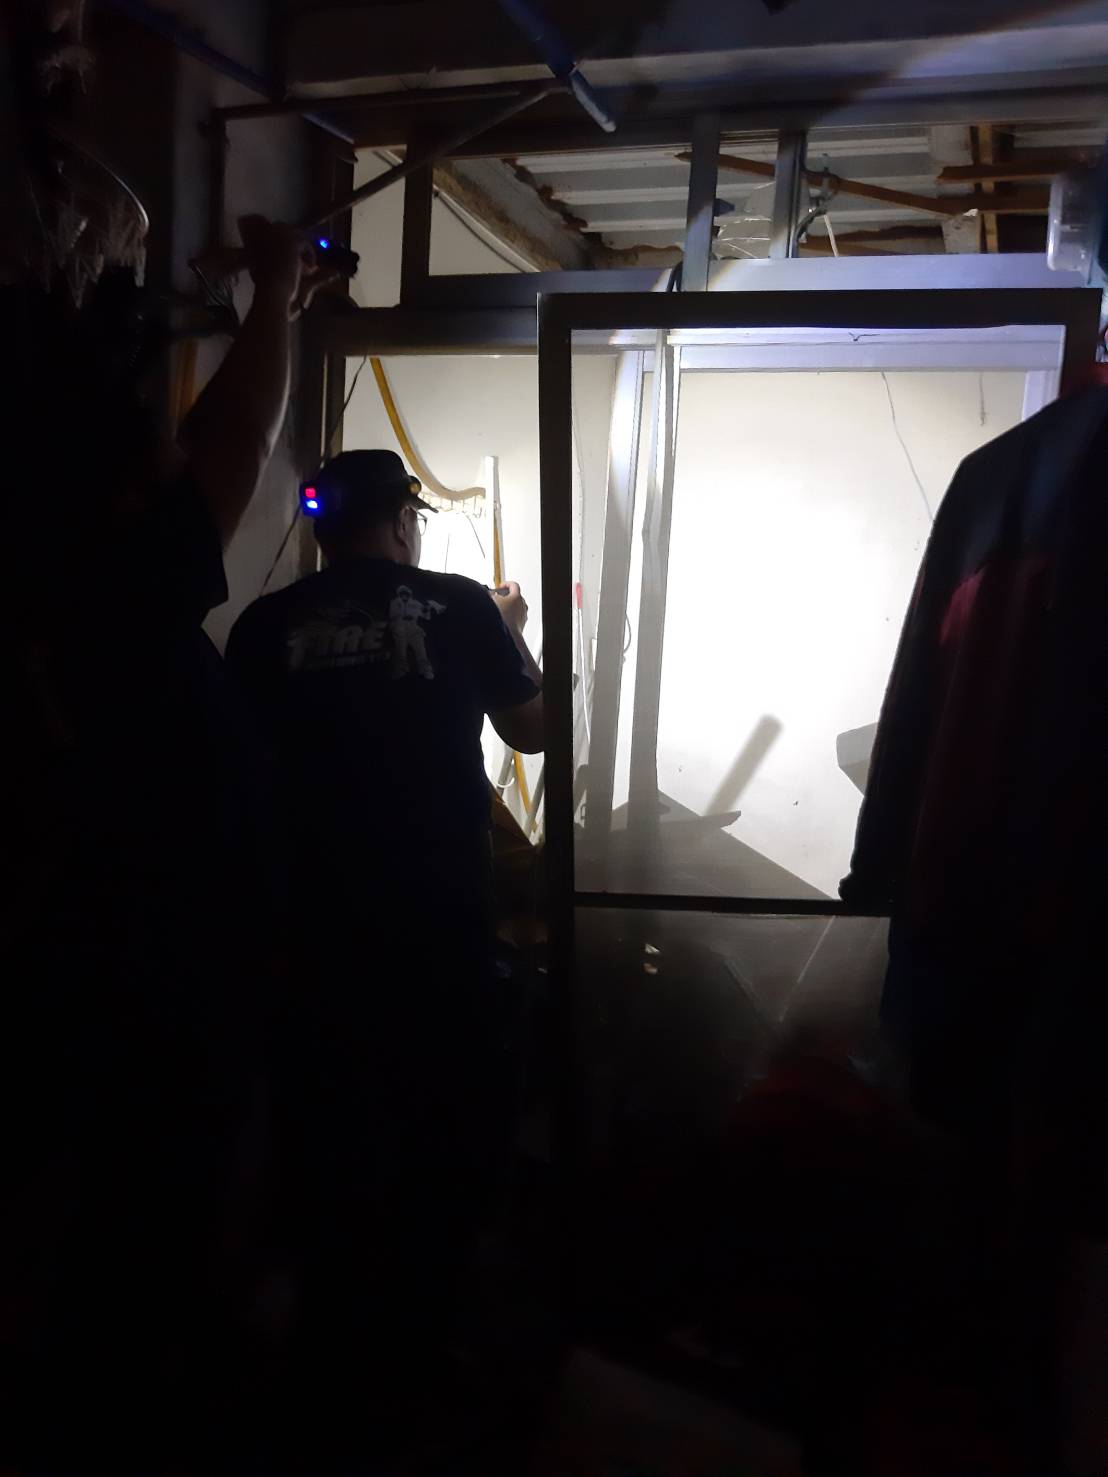 基隆市八德路陈姓男子今晚在租屋处遭4人殴打，慌乱之中疑有人丢爆裂物，造成屋内天花板受损。图／读者提供